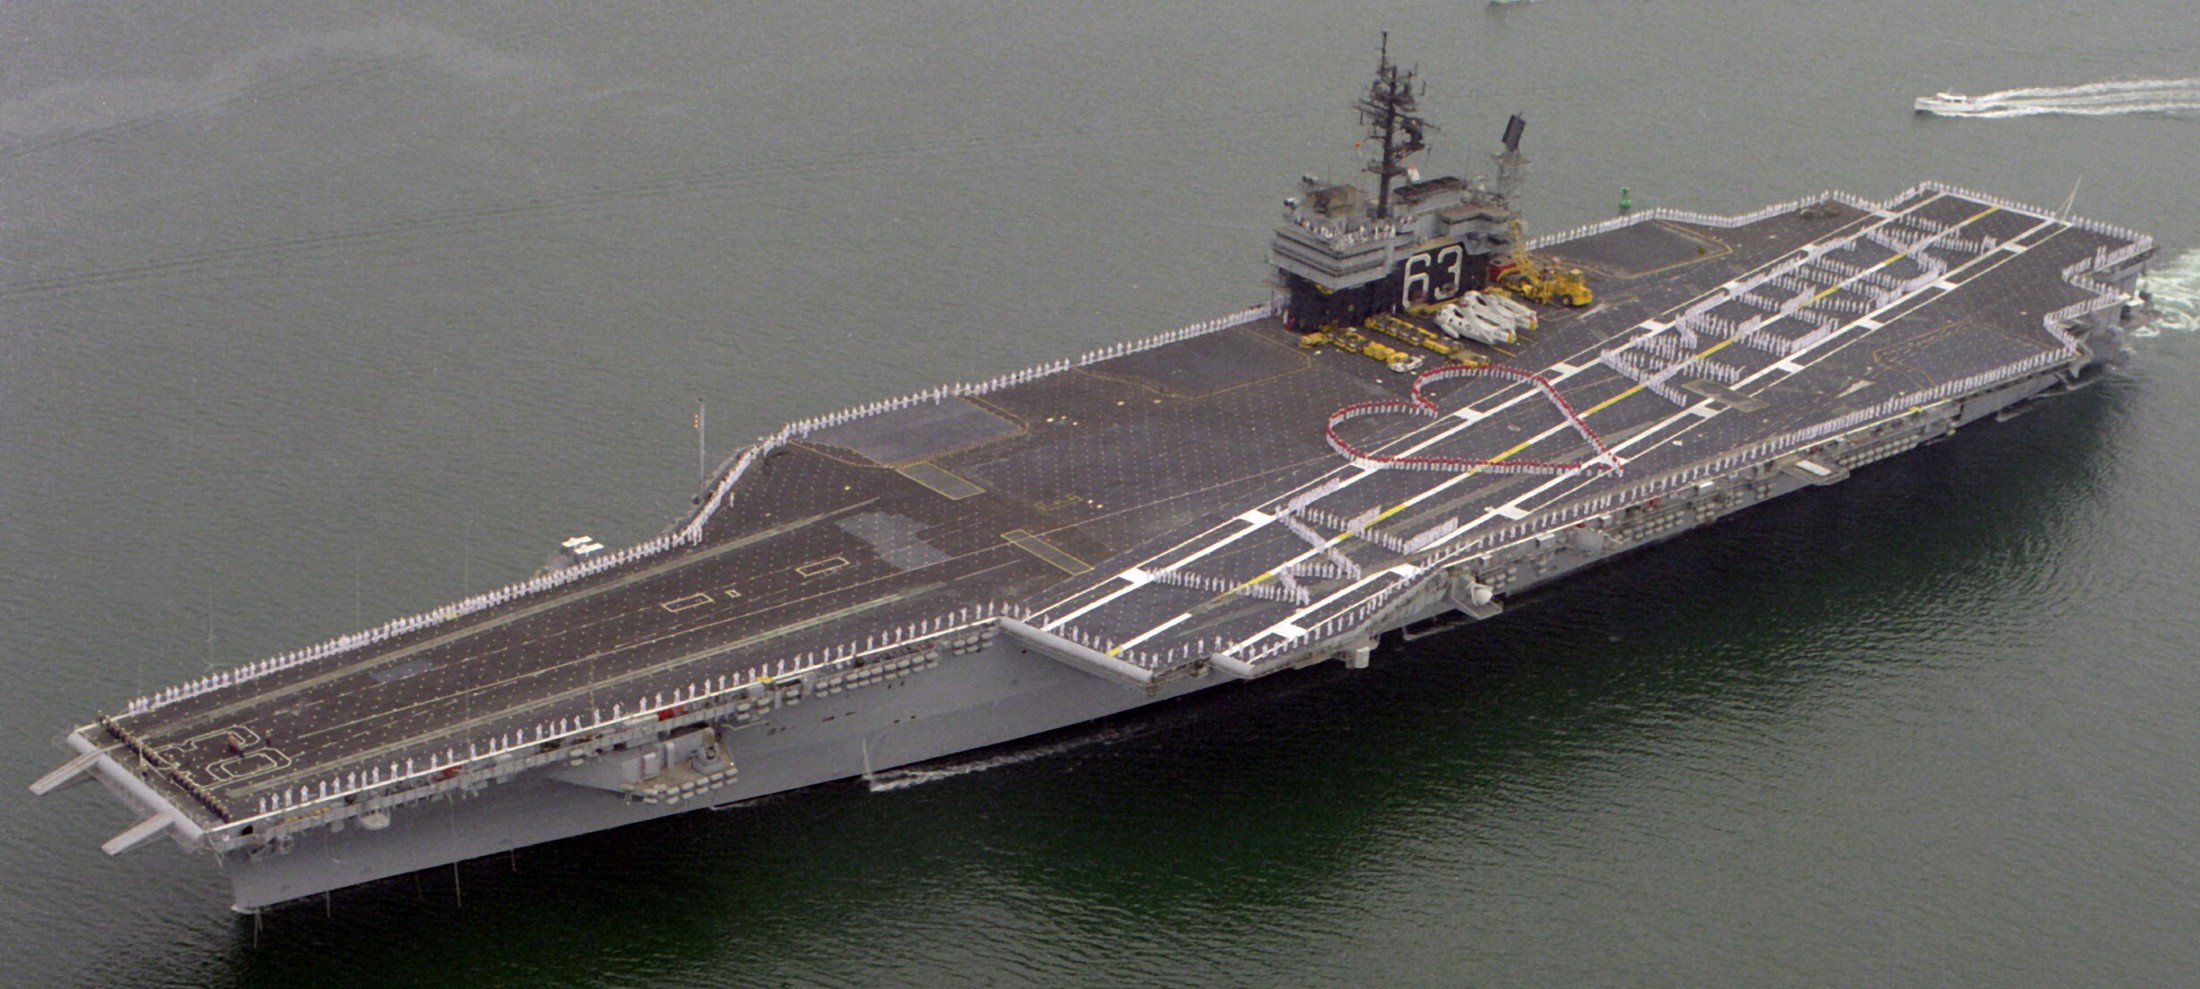 cv-63 uss kitty hawk aircraft carrier 351